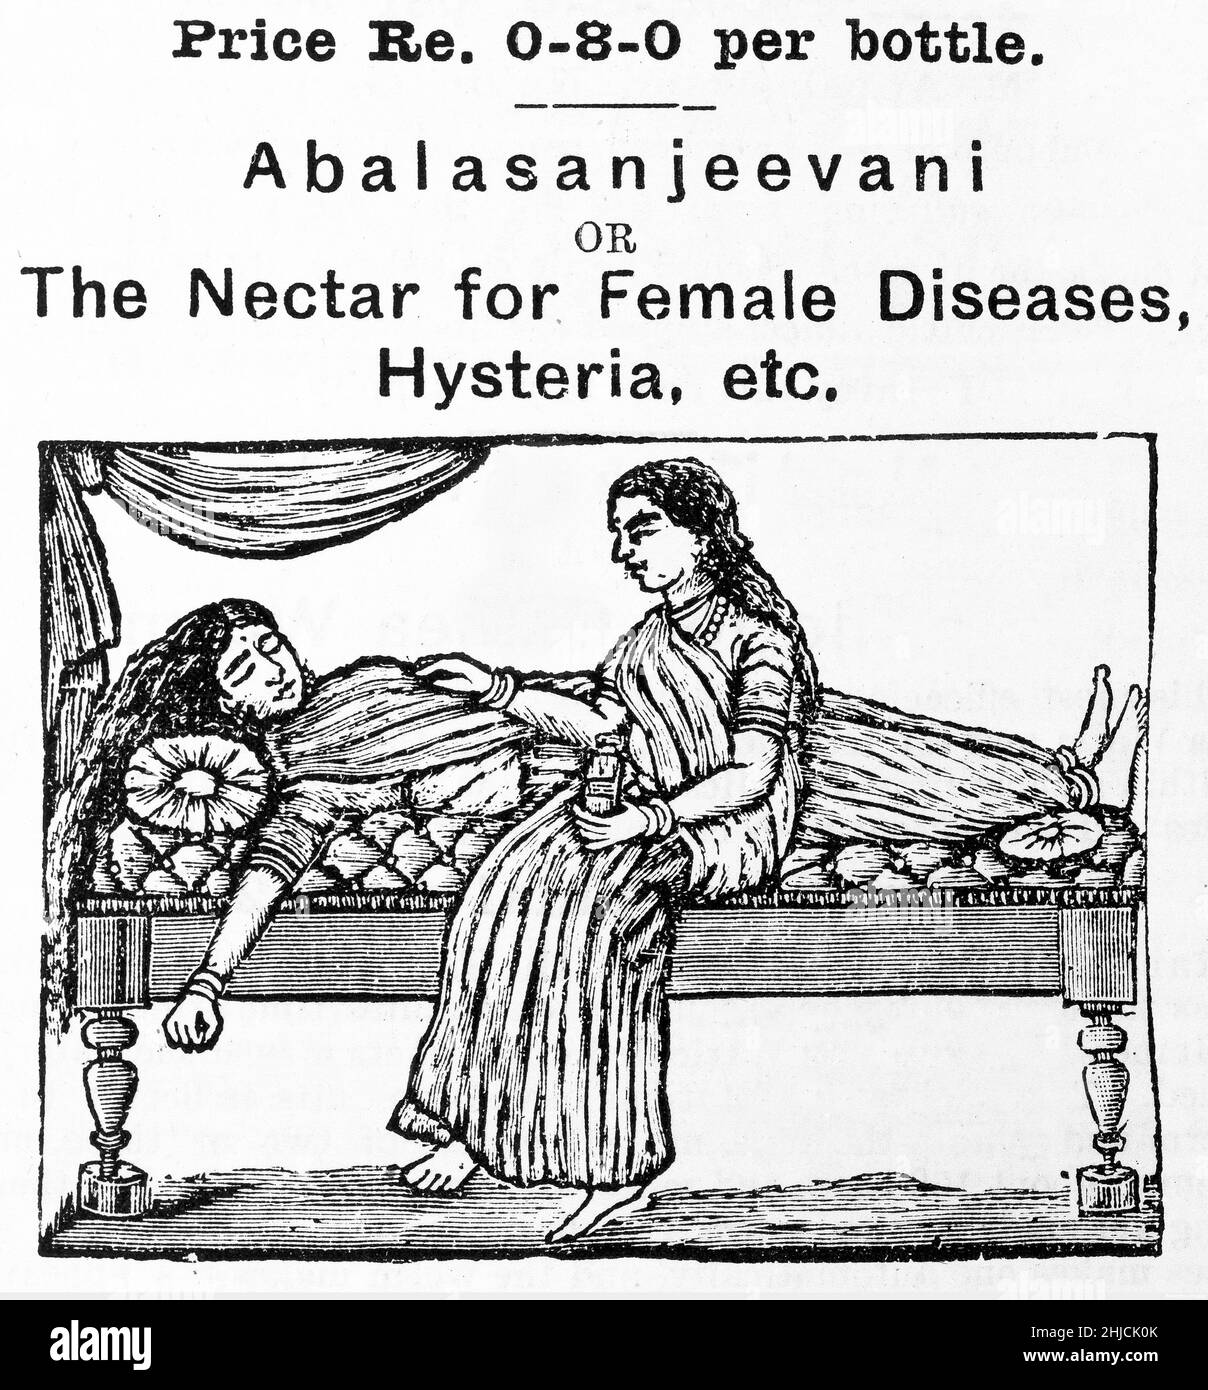 Un annuncio per 'Abalasanjeevani o il Nectar per le malattie femminili, l'isteria, ecc.' Fu un tonico creato da Pandit Gopalacharlu, nato nel 1872 a Machilipatnam in India. Ha studiato ayurveda a Mysore e nel 1898 ha iniziato l'Ayurvedasramam per popolare la medicina ayurvedica. La medicina ayurvedica è un sistema della medicina tradizionale indù. I più antichi testi ayurvedici conosciuti sono la Suscutha Samhita e la Charaka Samhita. Foto Stock